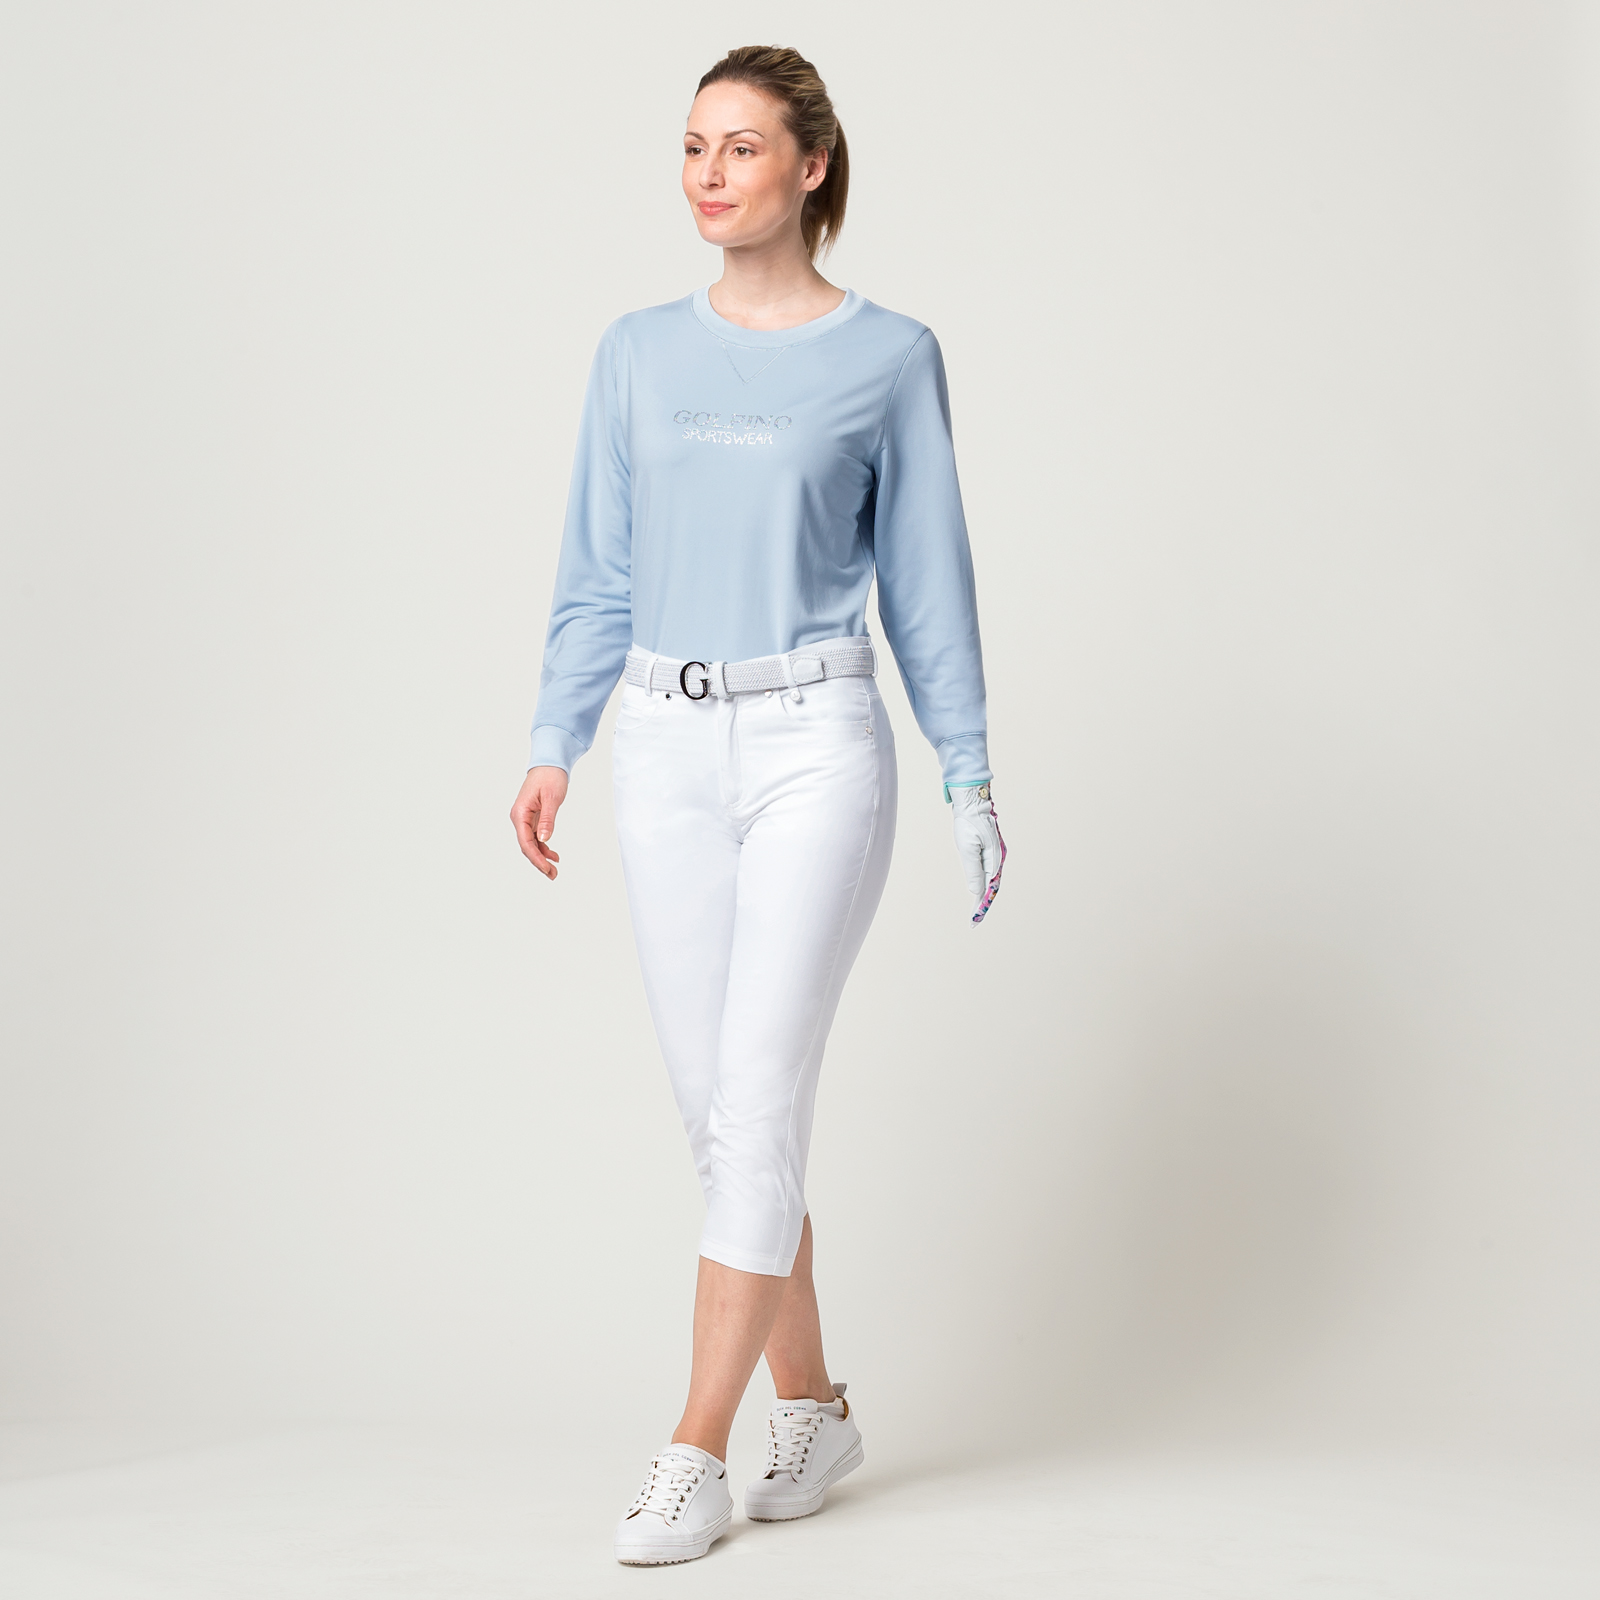 Damen Rundhals Pullover mit Extra Stretch Komfort und Strass-Applikation